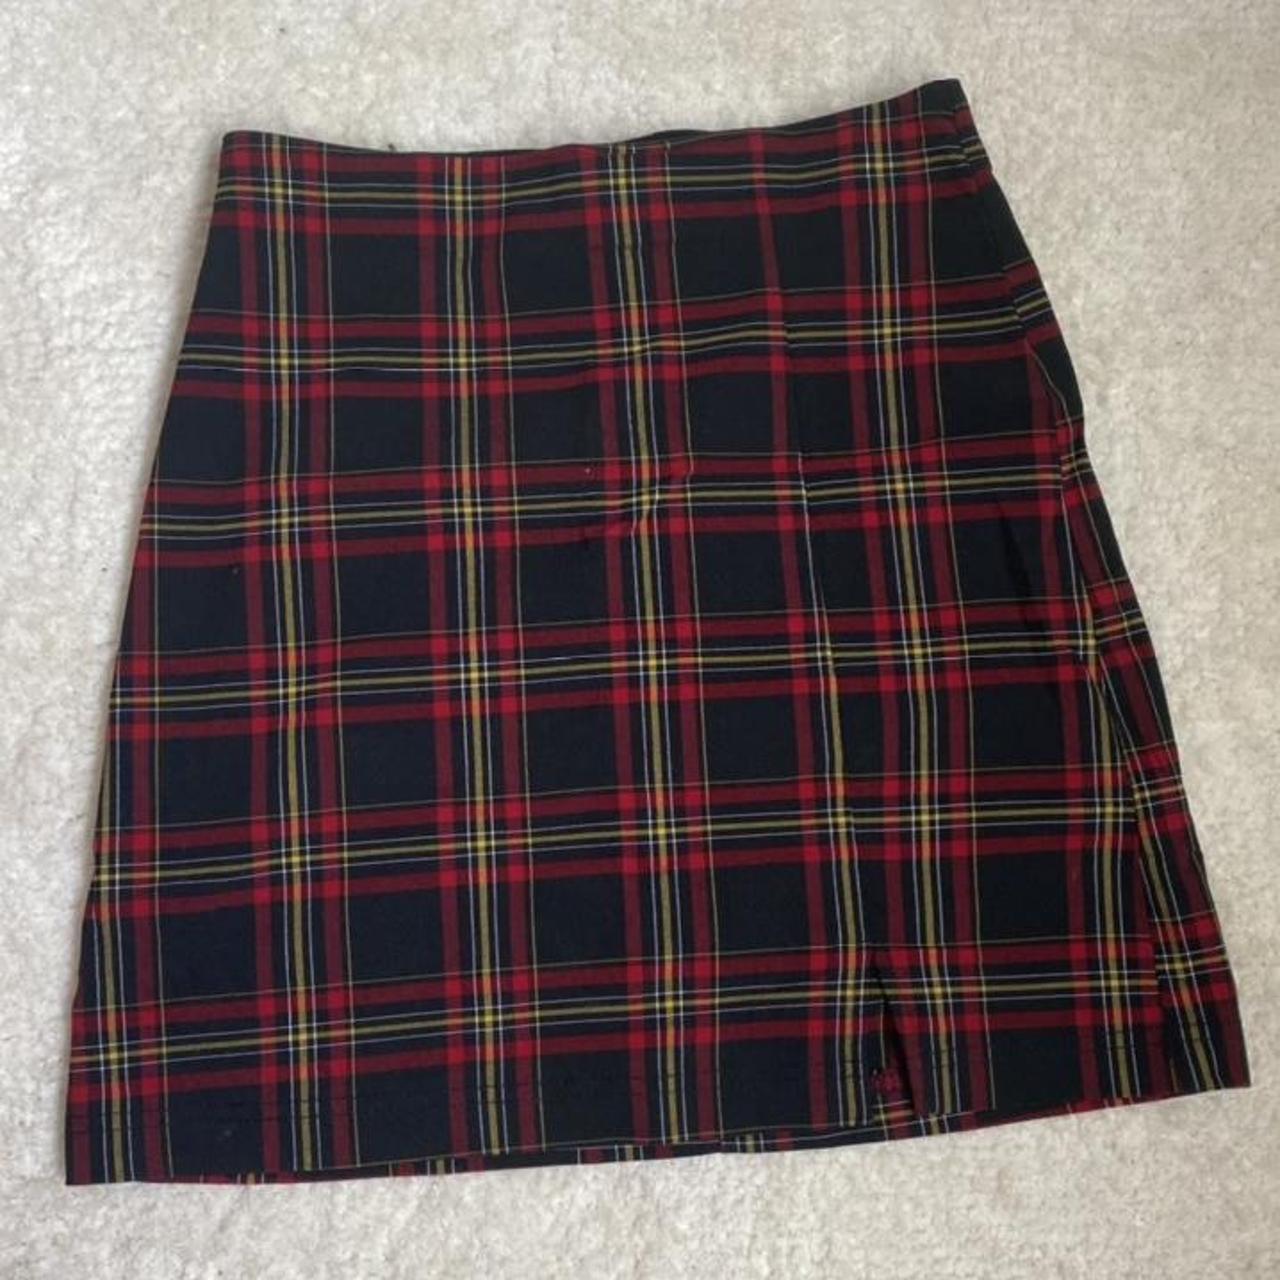 Topshop tartan a-line skirt size 6 elastic waist... - Depop